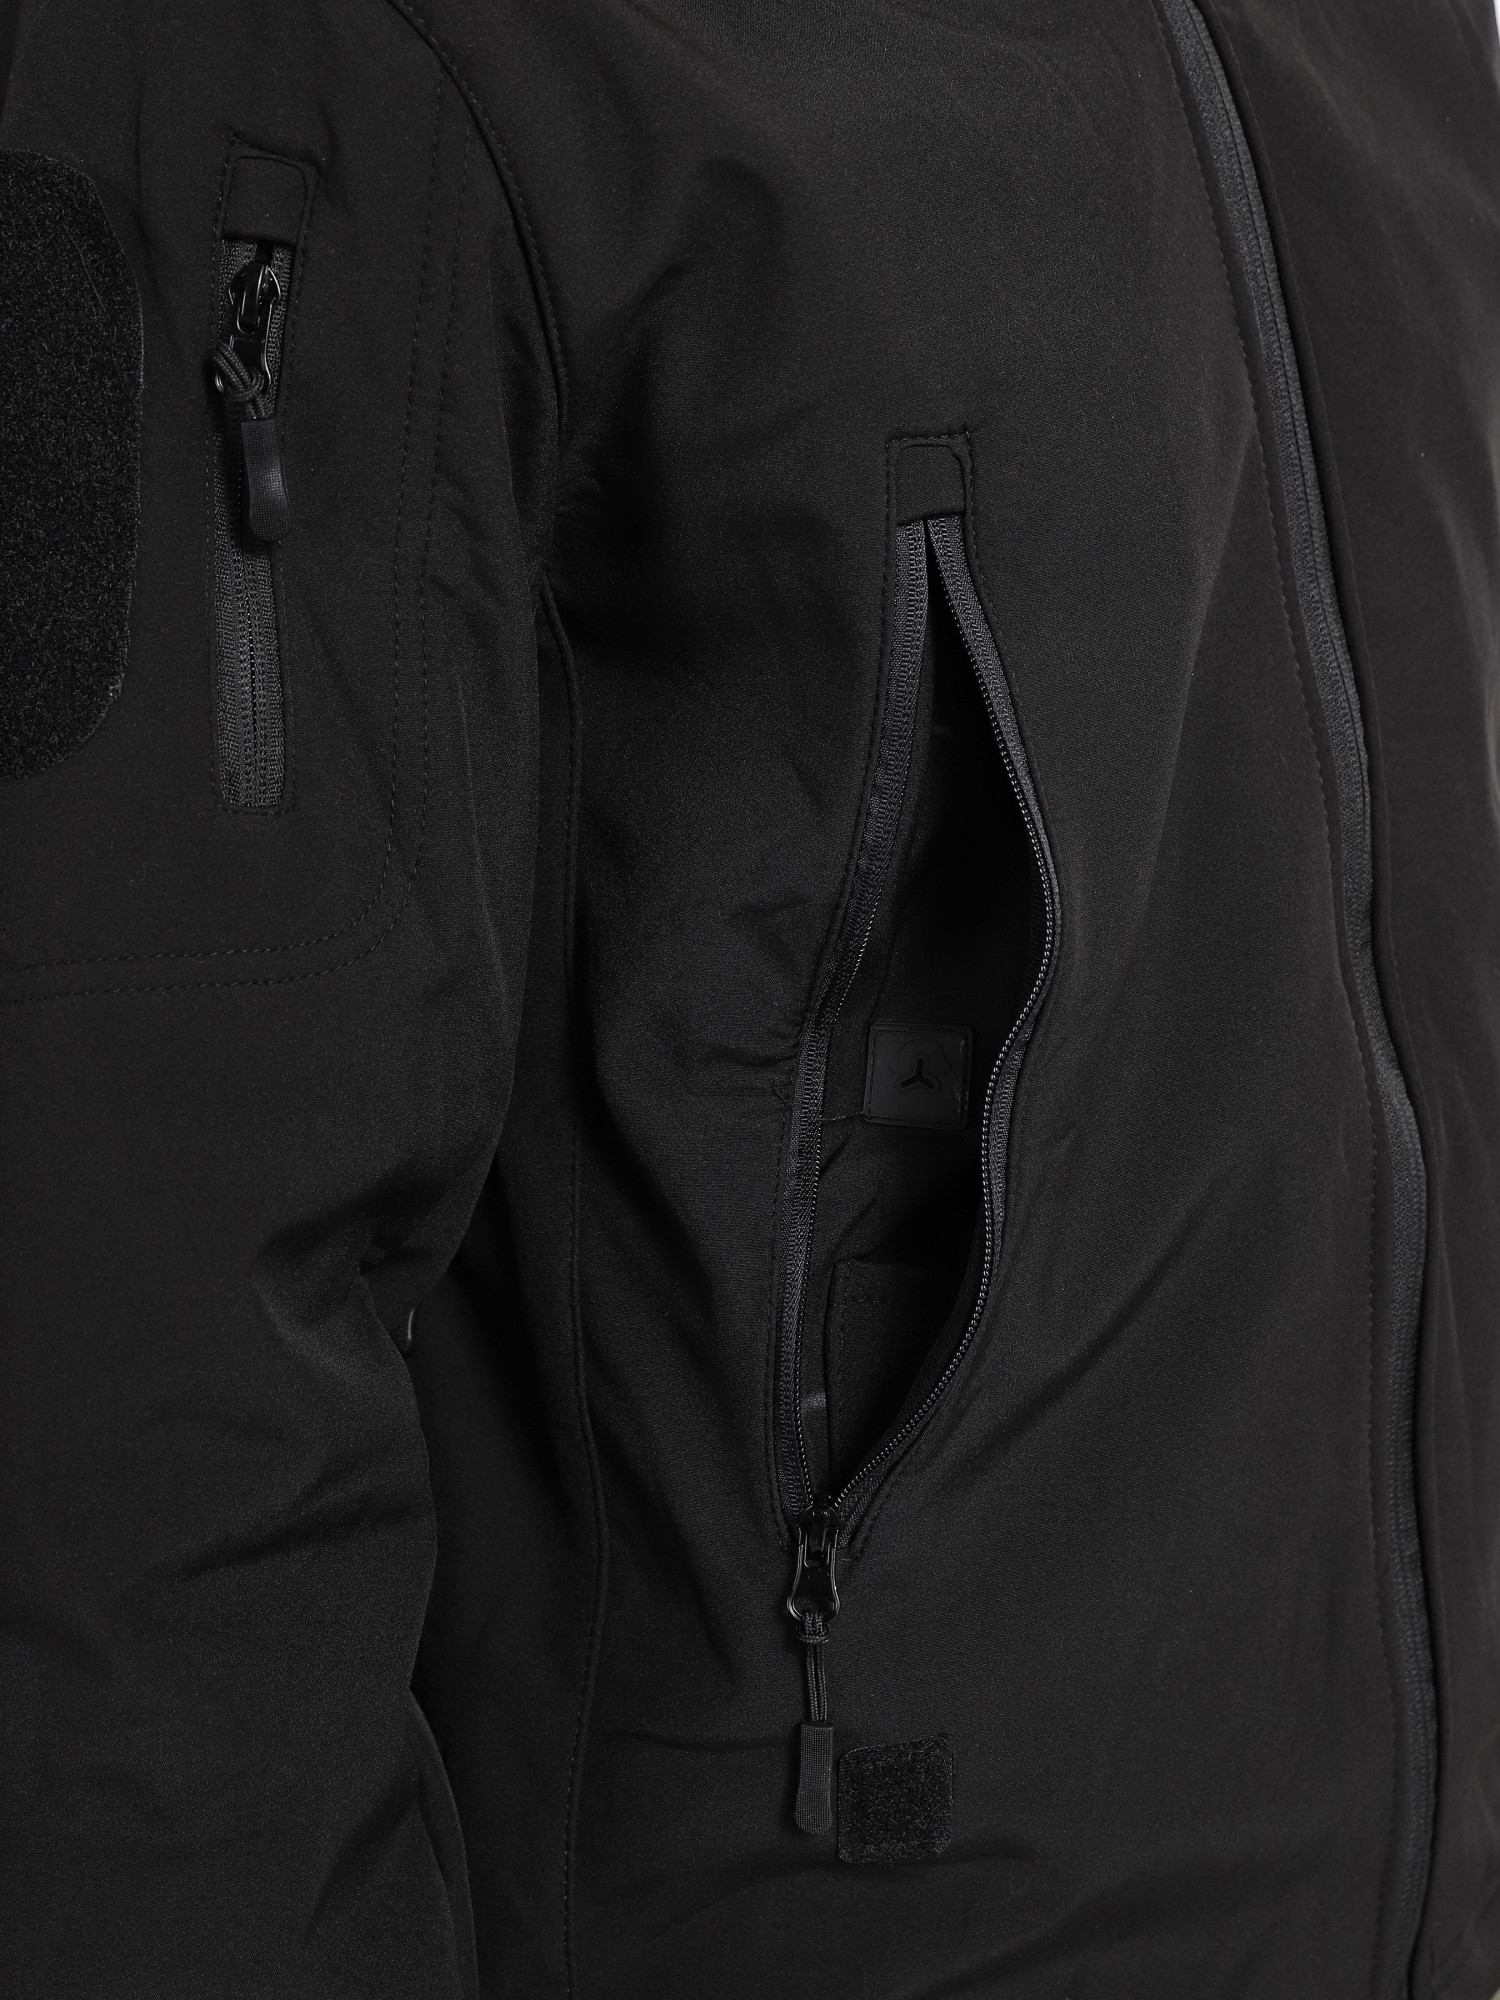 Куртка мужская Radder Lynx черная 882206-010  изображение 5